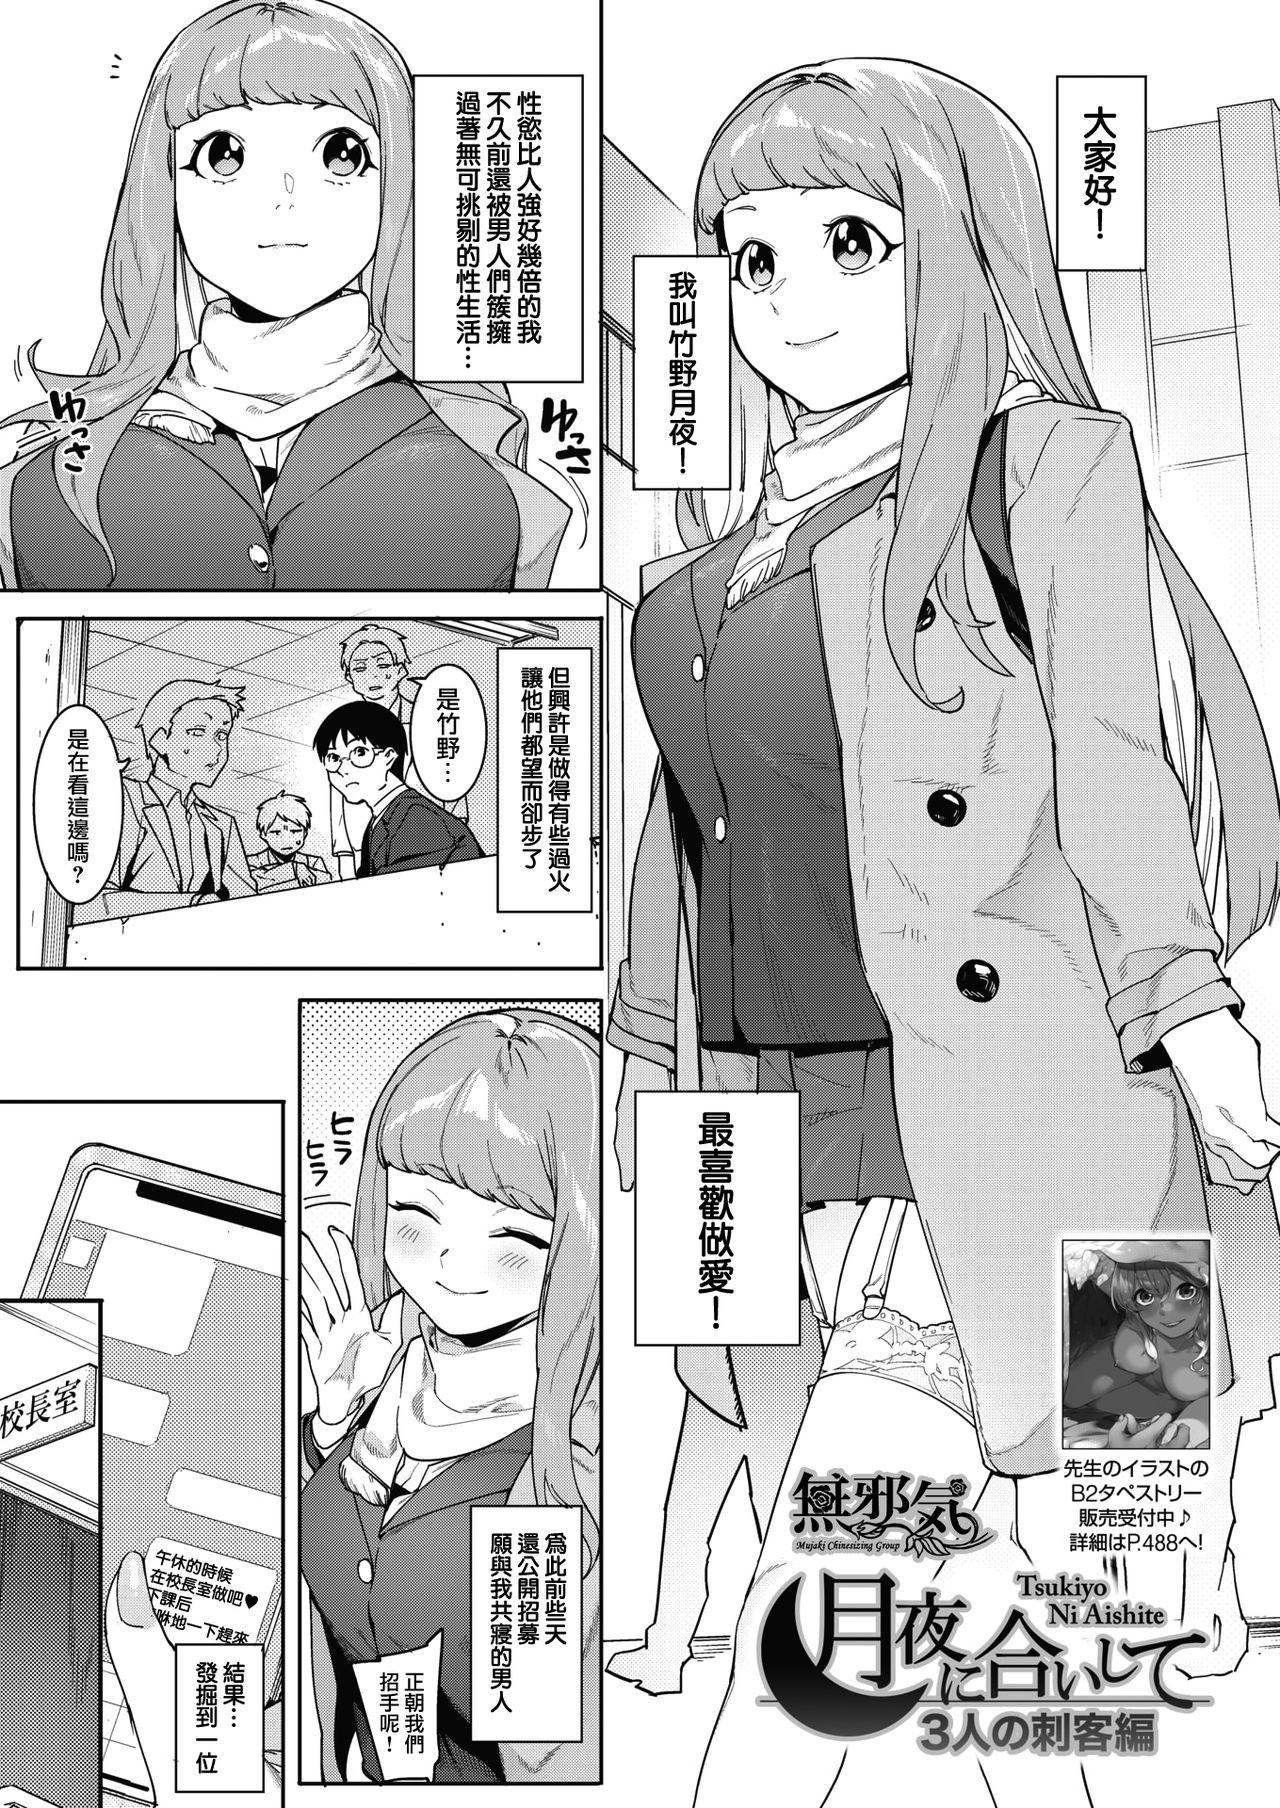 Gay Physicals Tsukiyo Ni Aishite 3-nin no Shikaku Hen Amateur Blowjob - Page 1